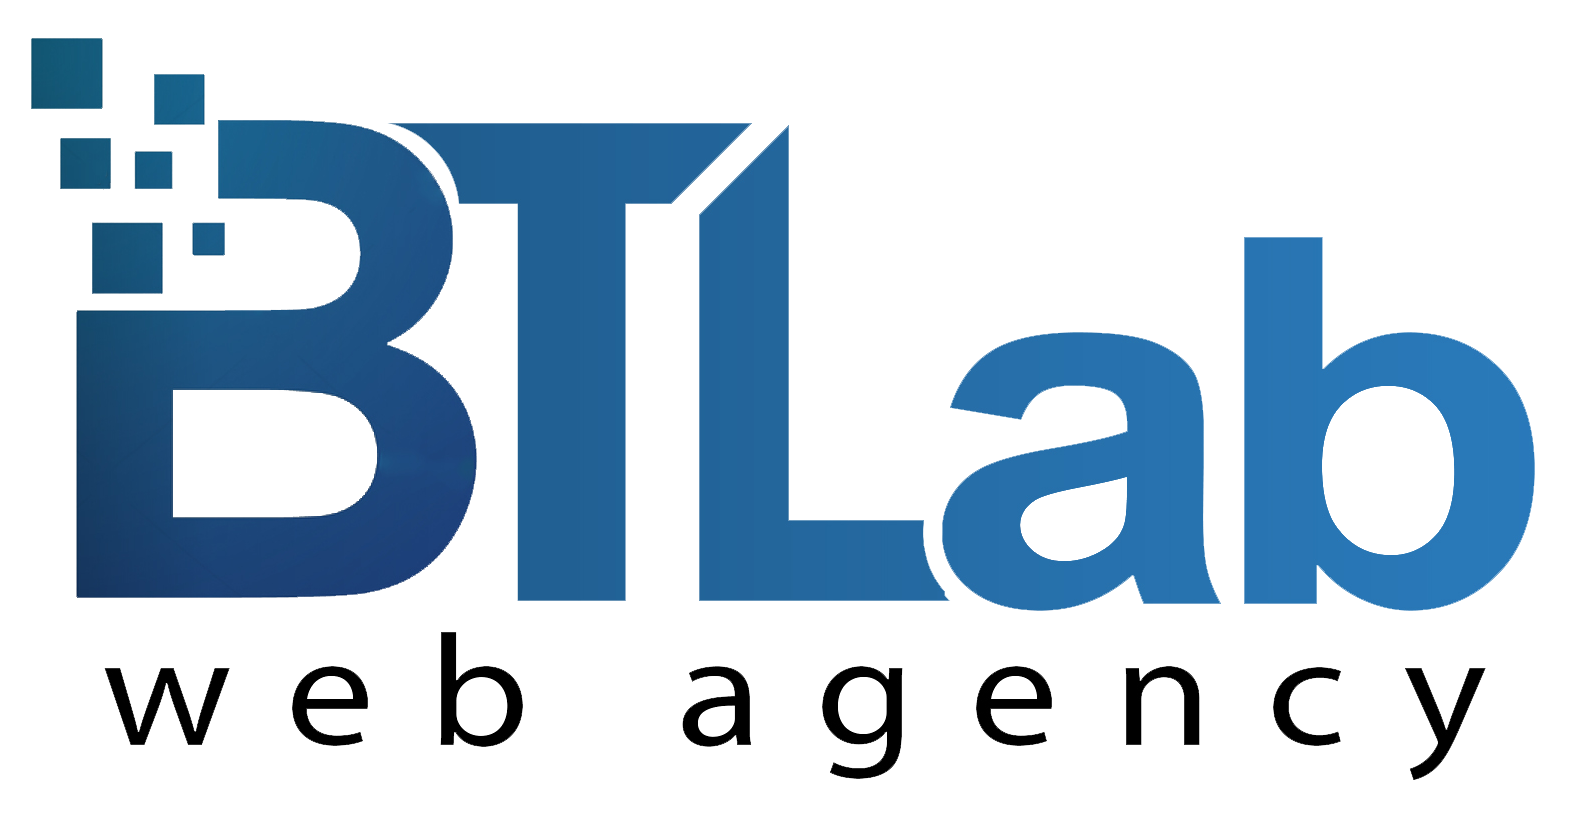 BTLab Web Agency